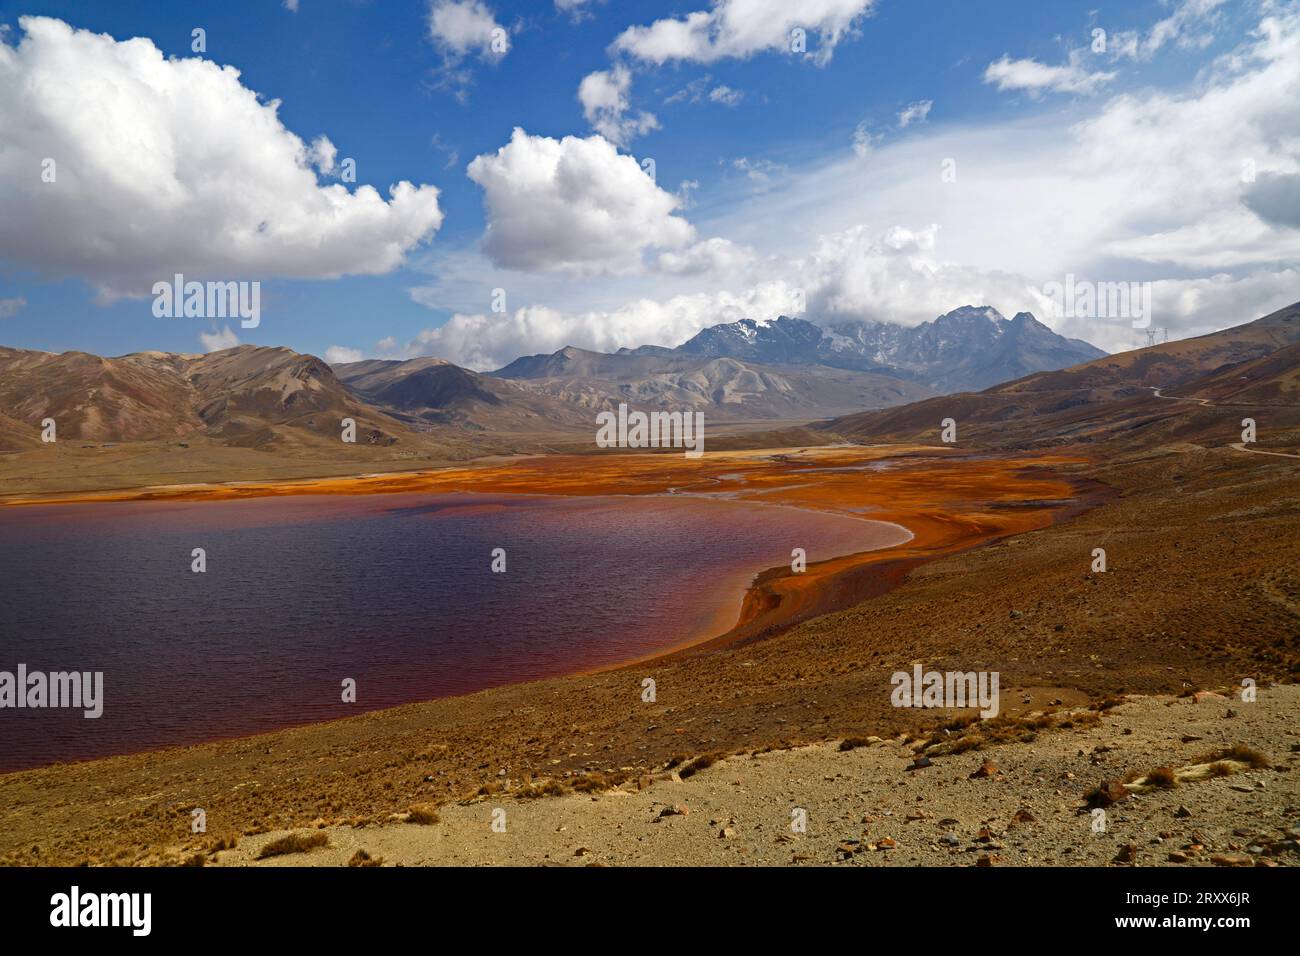 Réservoir de Milluni, près de la Paz / El Alto, BOLIVIE ; 27 septembre 2023 : une vue montrant des niveaux d'eau très bas dans le réservoir de Represa Milluni, qui alimente la ville voisine d'El Alto et ne représente actuellement que 20% de sa capacité. Les régions altiplano boliviennes connaissent actuellement une grave sécheresse et les niveaux d'eau des lacs, rivières et réservoirs sont inférieurs à la normale pour la période de l'année. Beaucoup blâment le changement climatique ; les dernières années ont été plus sèches que la normale et le phénomène El Niño se renforce actuellement dans l’océan Pacifique au large de l’Amérique du Sud. Crédit : James Brunker/Alamy Banque D'Images